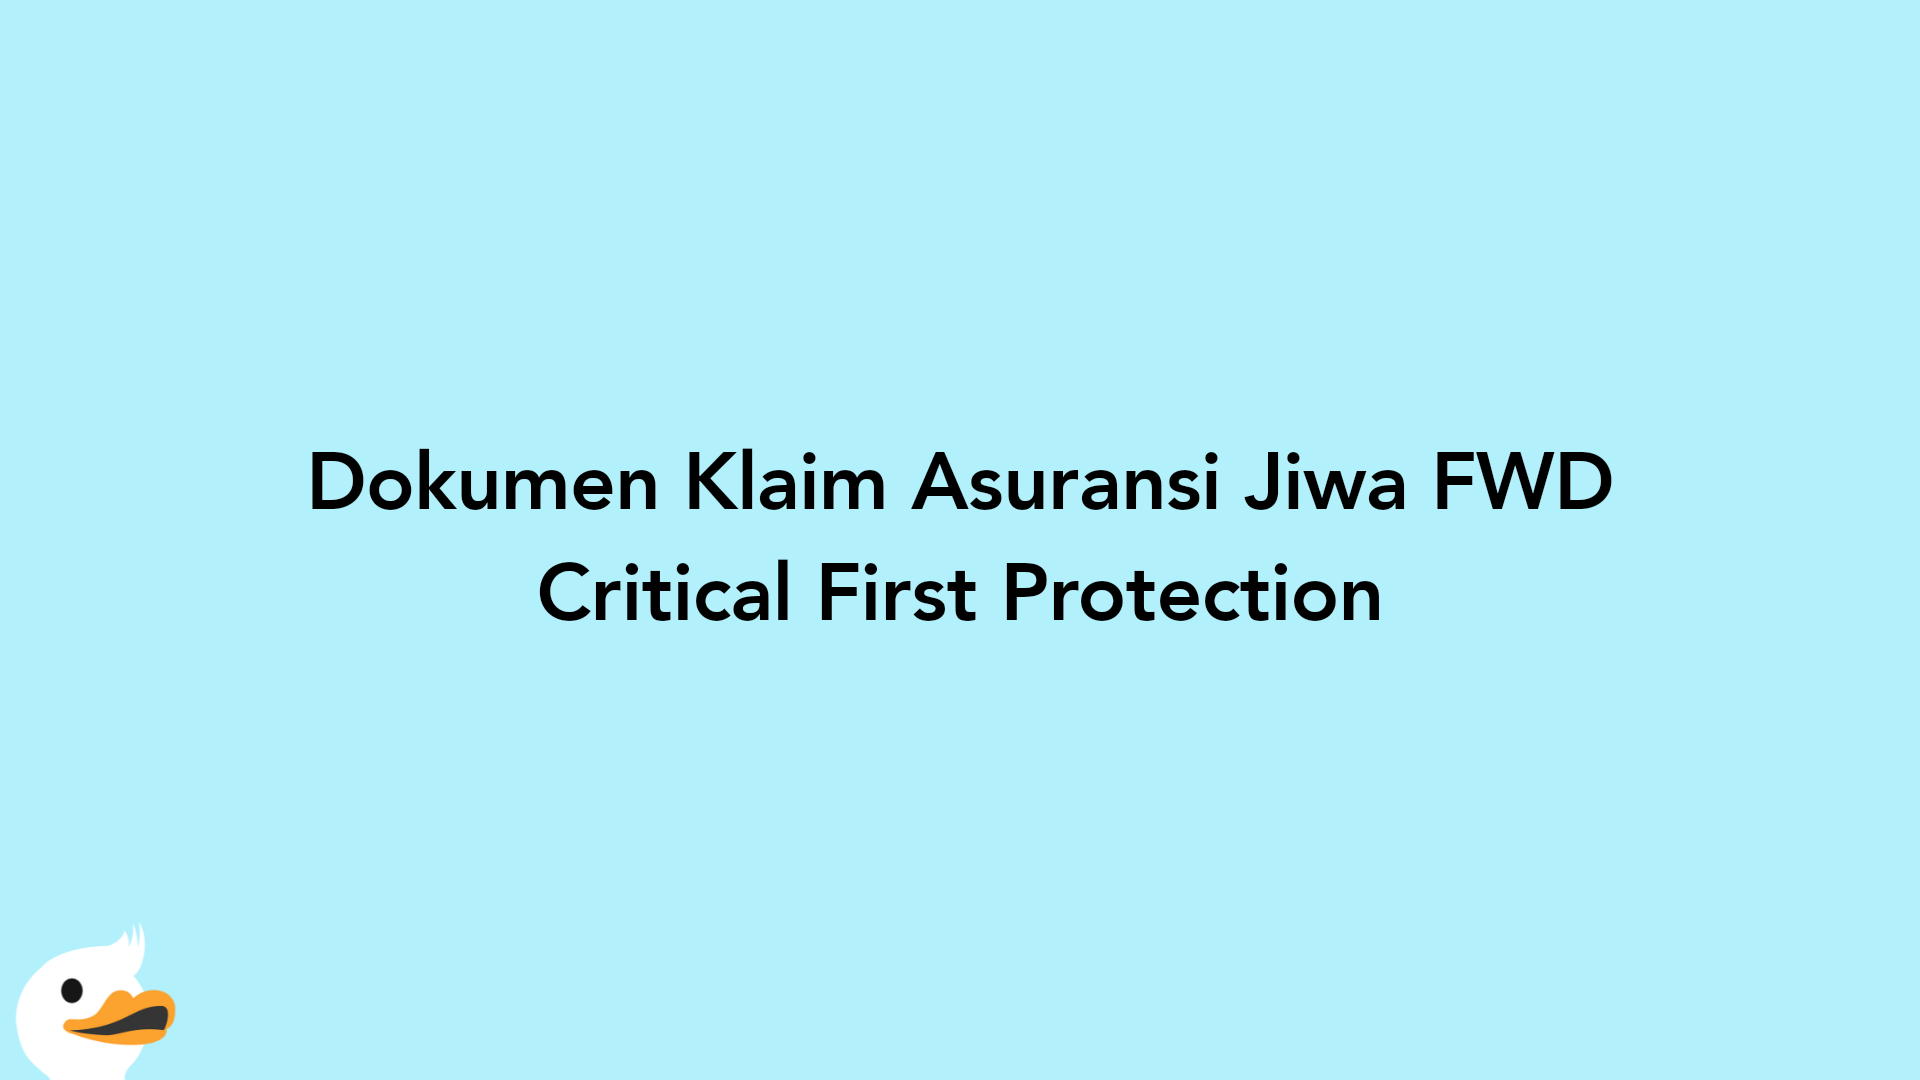 Dokumen Klaim Asuransi Jiwa FWD Critical First Protection